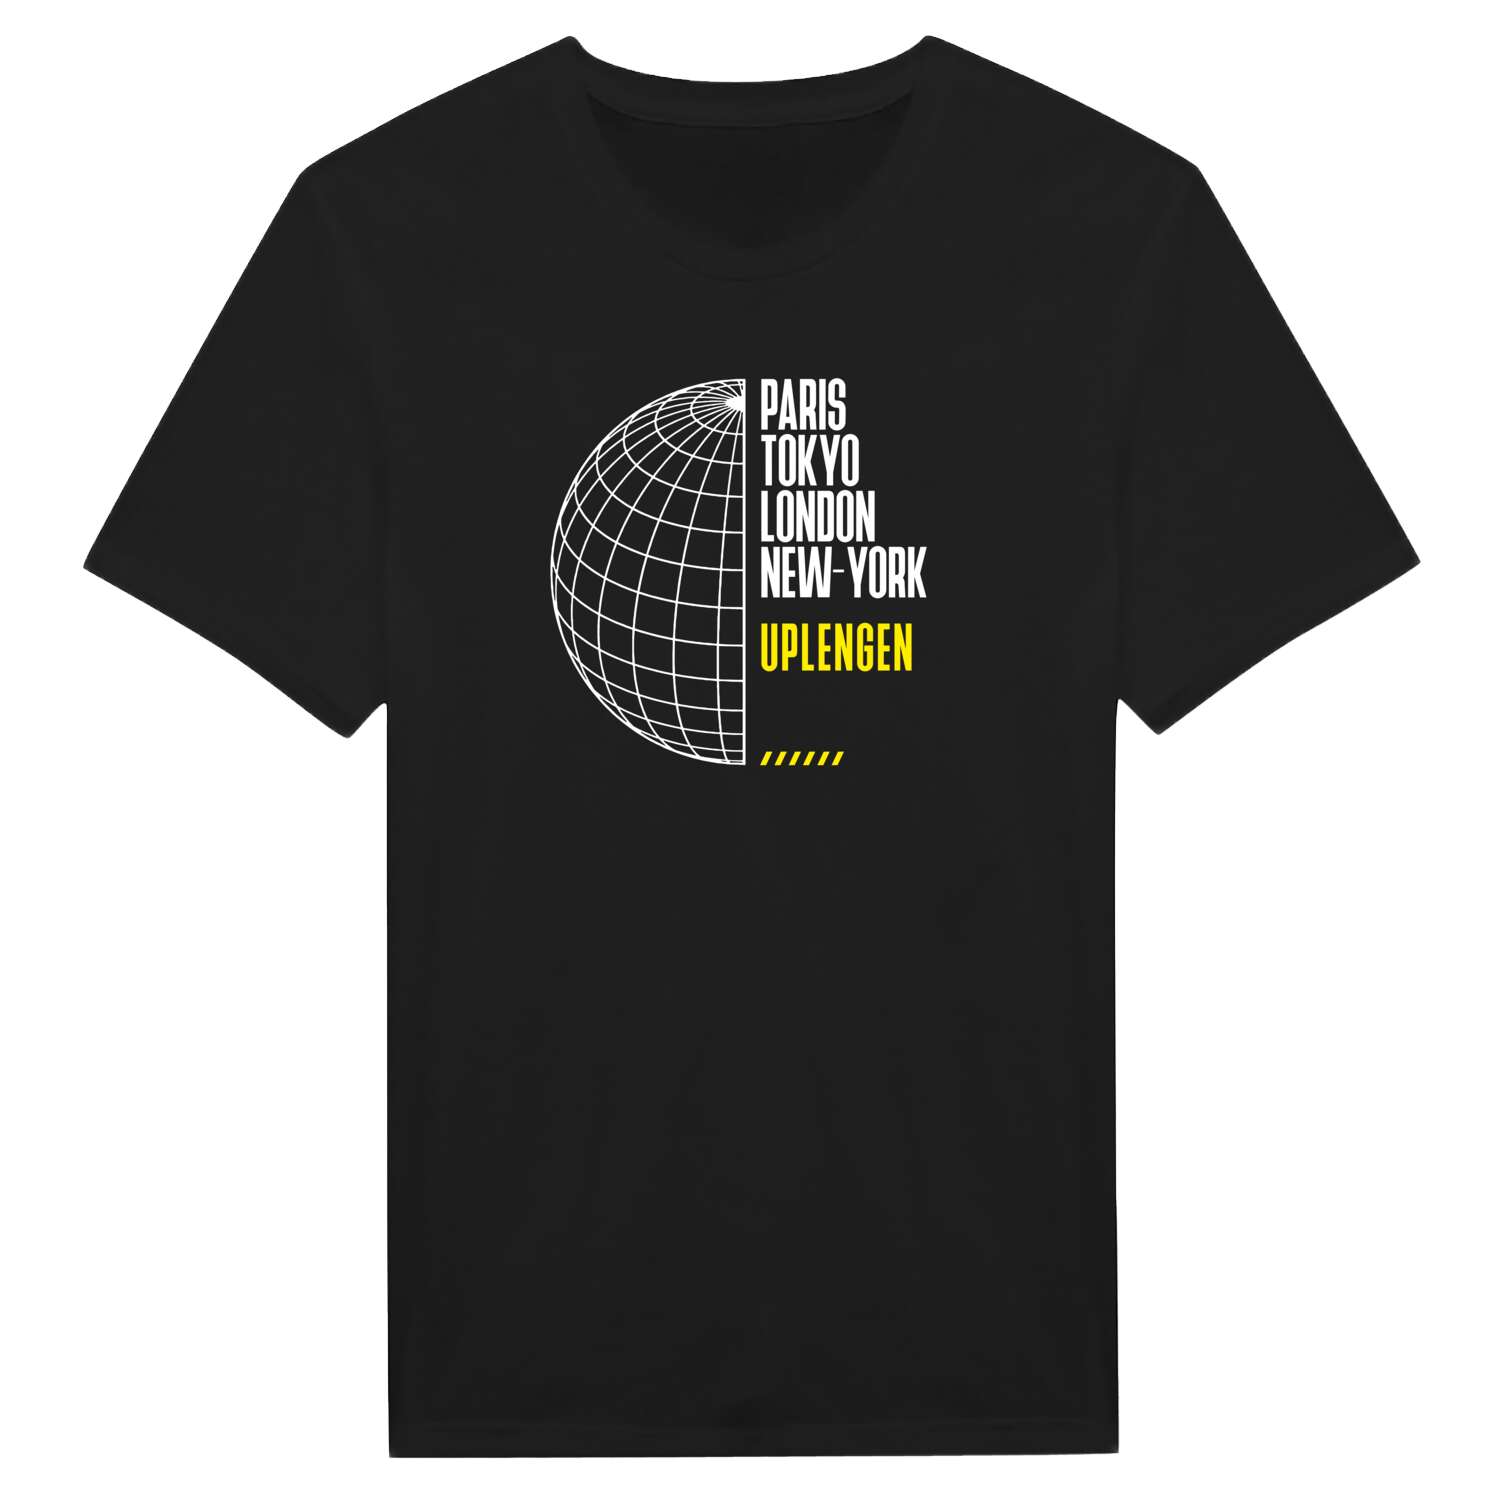 Uplengen T-Shirt »Paris Tokyo London«